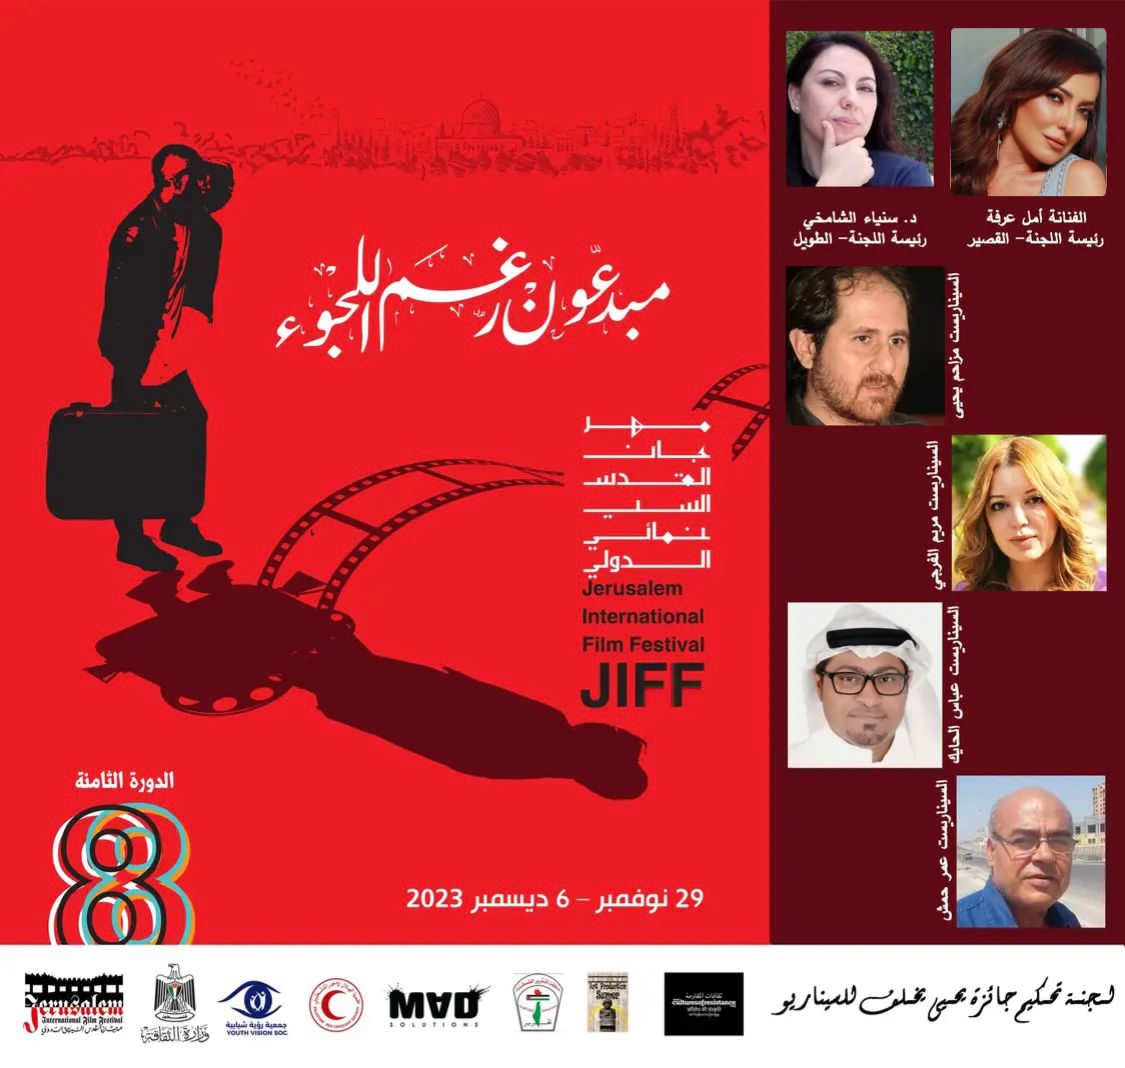 سنياء الشامخي وأمل عرفة رؤساء للجنة " جائزة يحيى يخلف للسيناريو" مهرجان القدس السينمائي الدولي